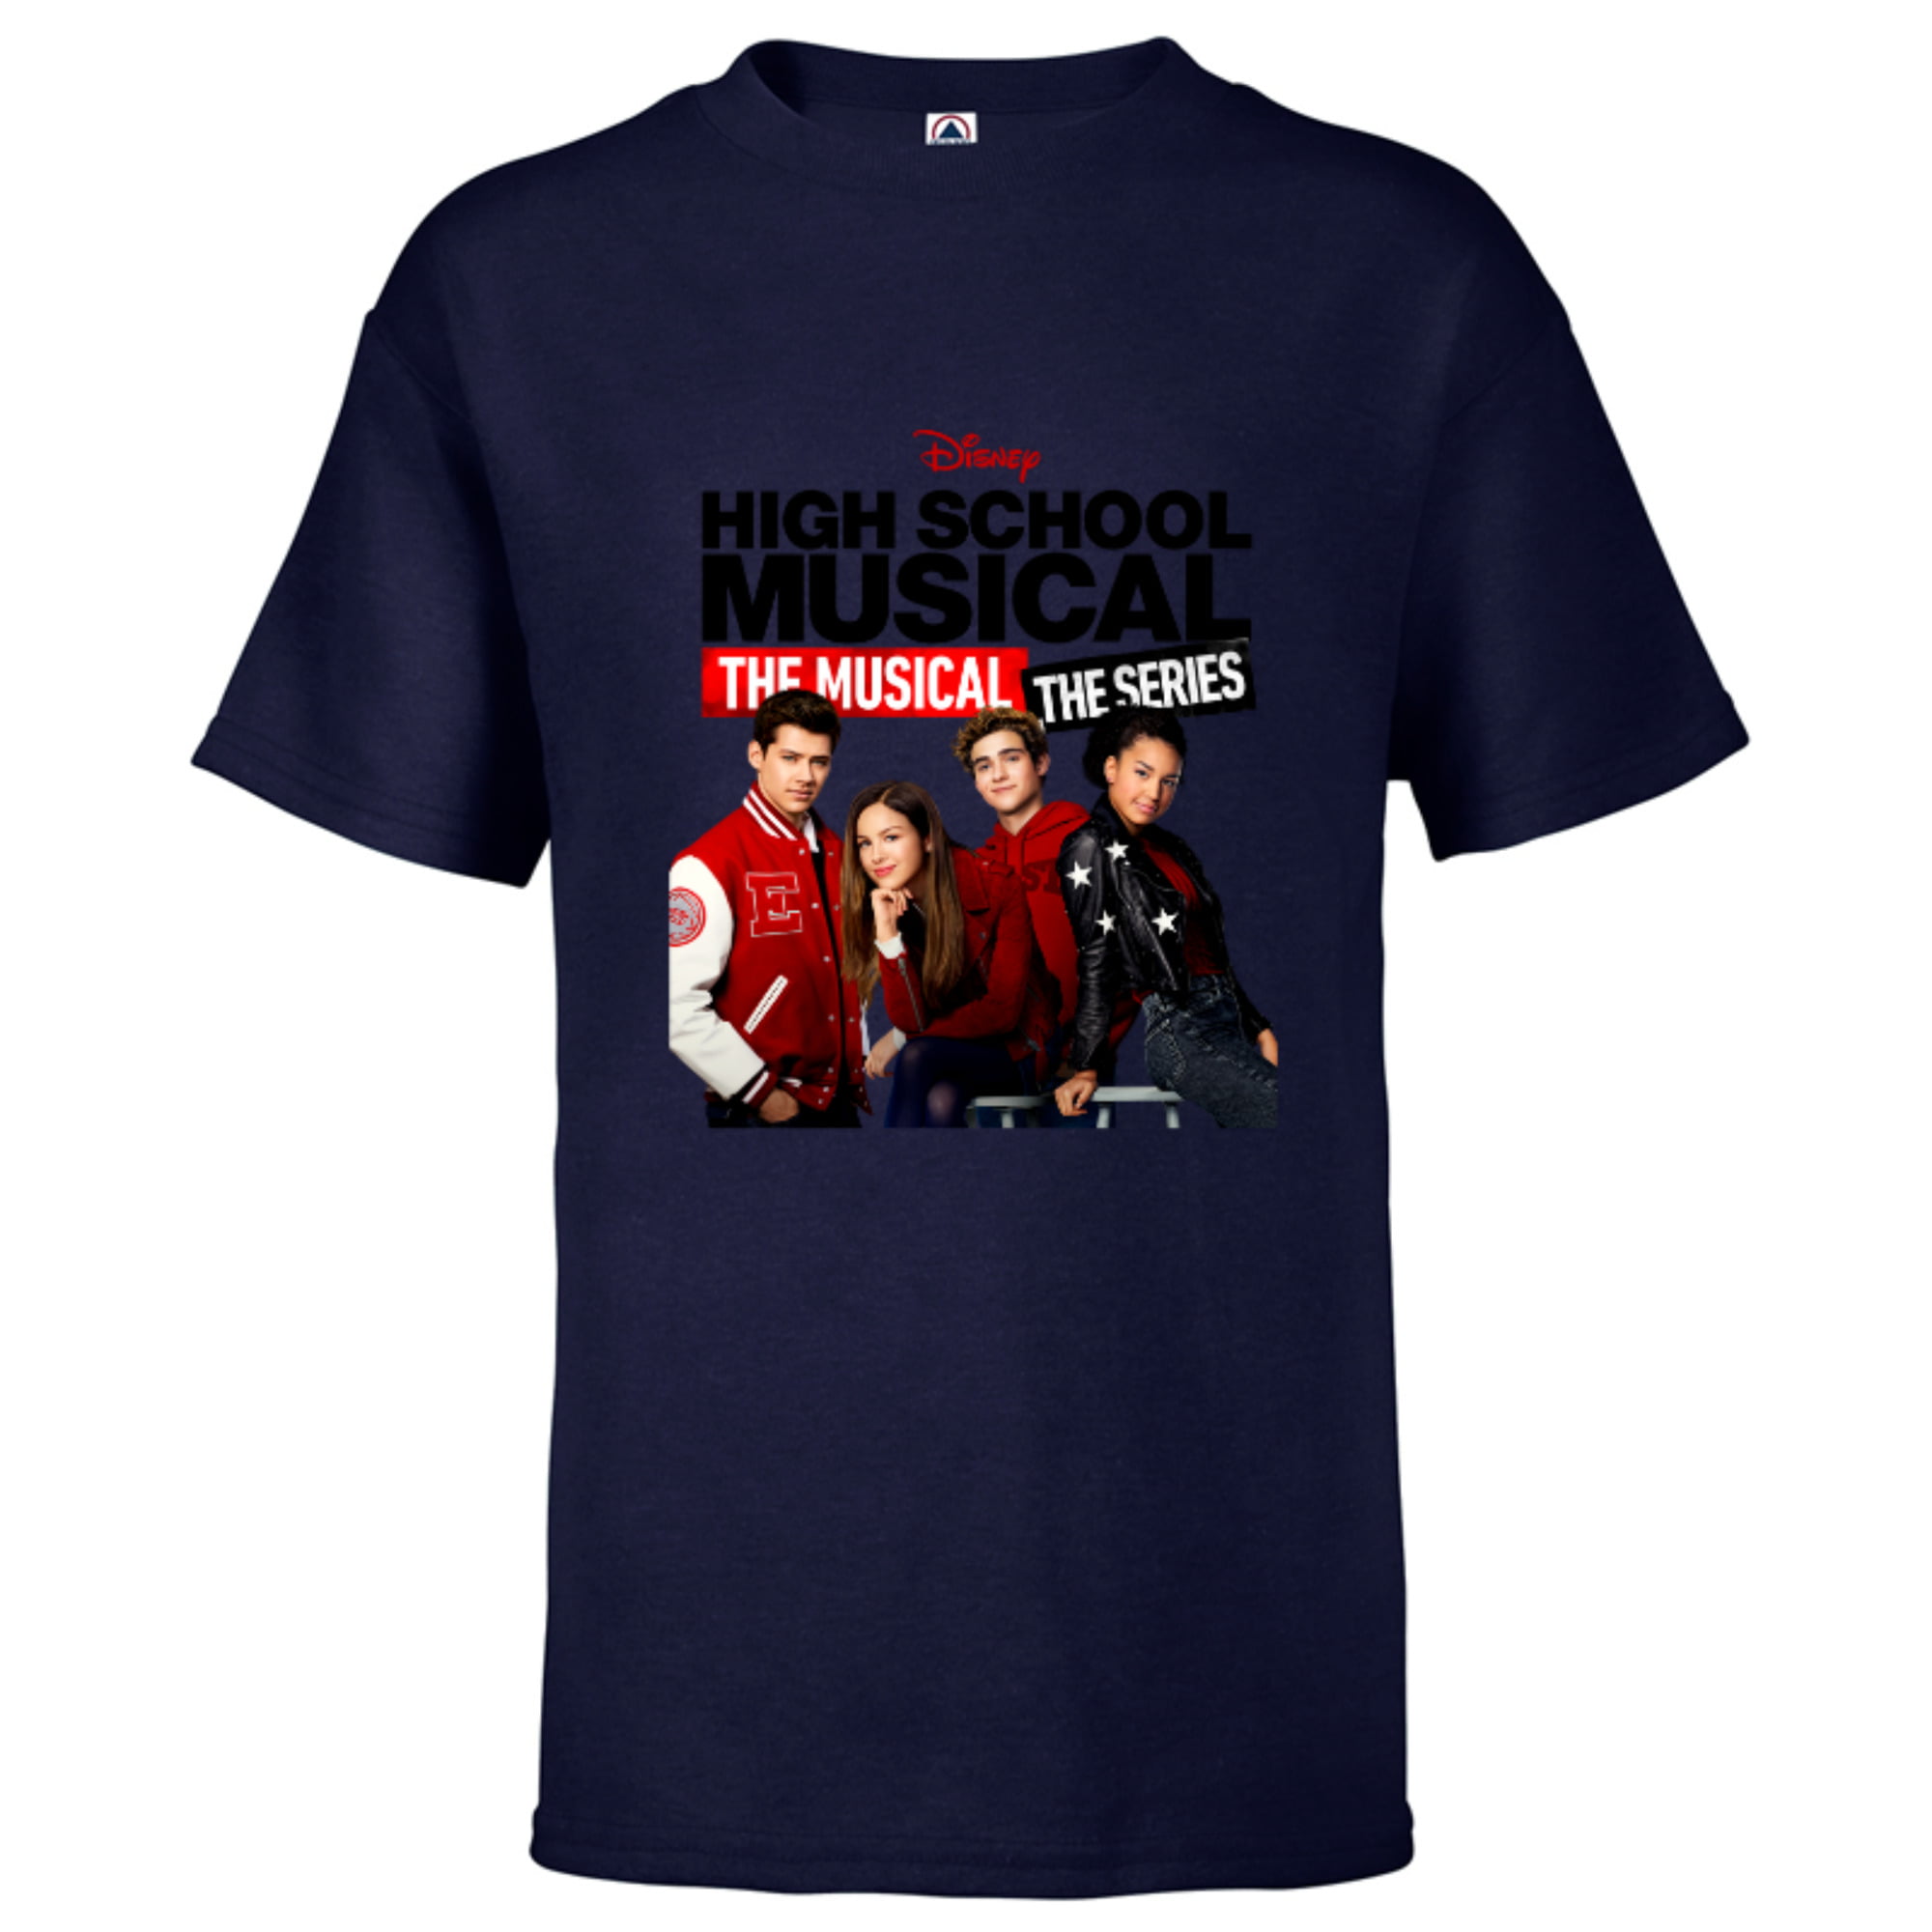 Disney High School Musical the musical series cast t-shirt